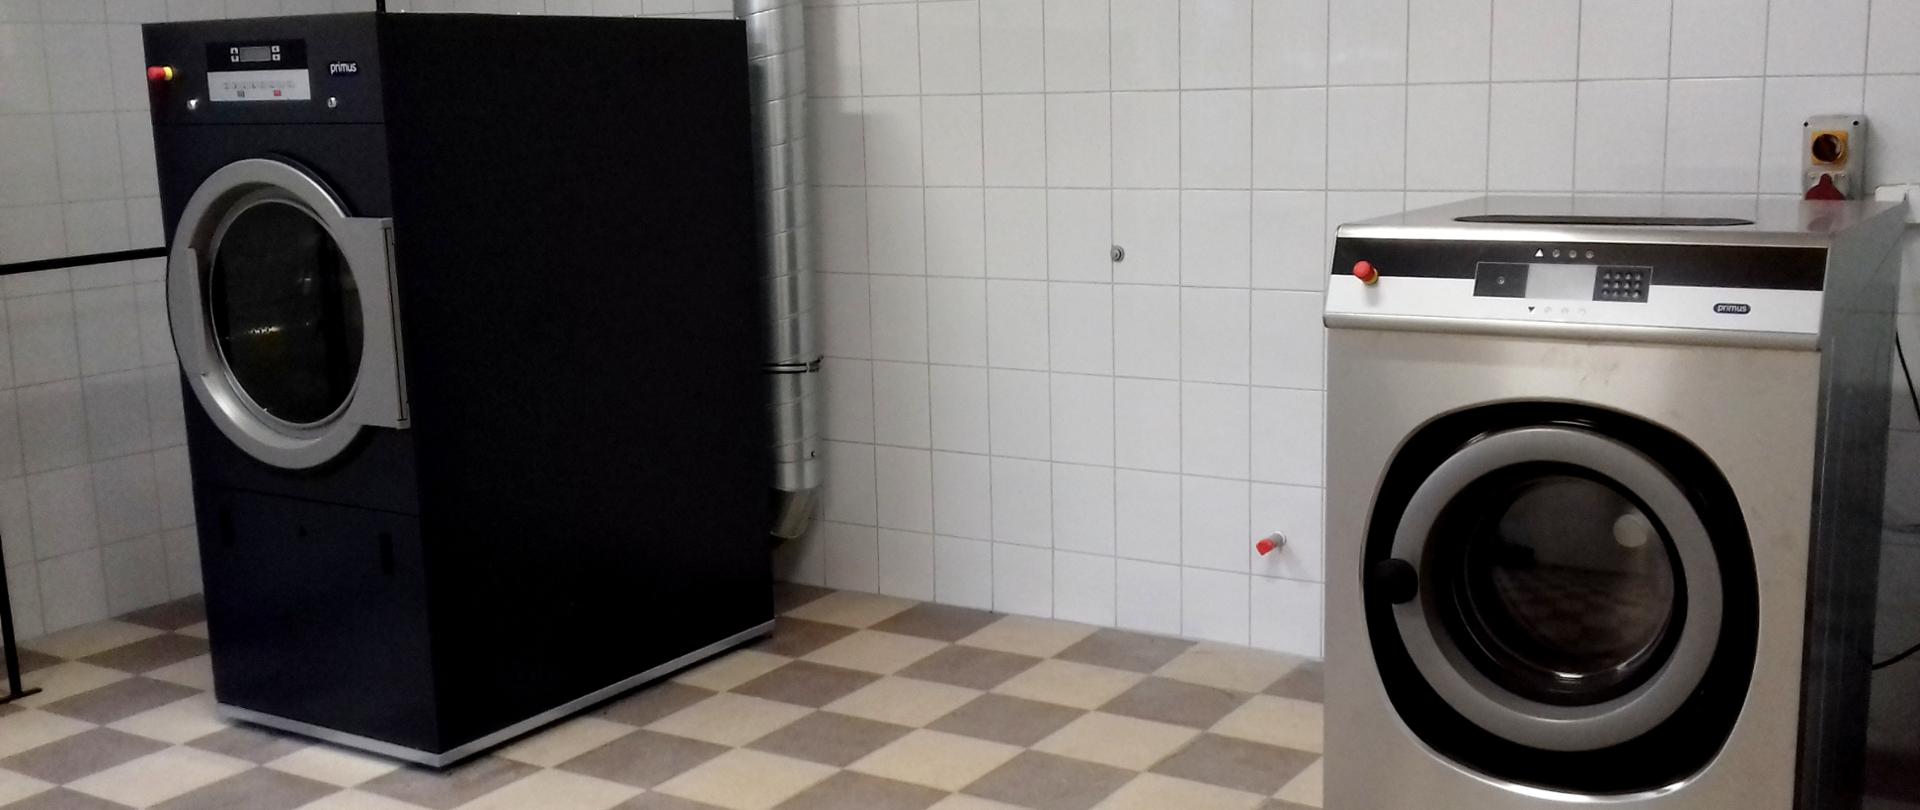 Zdjęcie przedstawia pomieszczenie pralni Komendy Miejskiej Państwowej Straży Pożarnej w Krośnie. Na tle ściany wyłożonej białymi płytkami zainstalowana jest srebrna pralnica z dużym otworem na przedniej centralnej ścianie urządzenia na wsad ubrań przeznaczonych do prania. Po lewej stronie pomieszczenia, w pewnej odległości od pralnicy widoczne jest ciemnoszare urządzenie – suszarka do upranych ubrań. W jego przedniej części znajduje się otwór do wkładania odzieży przeznaczonej do suszenia.